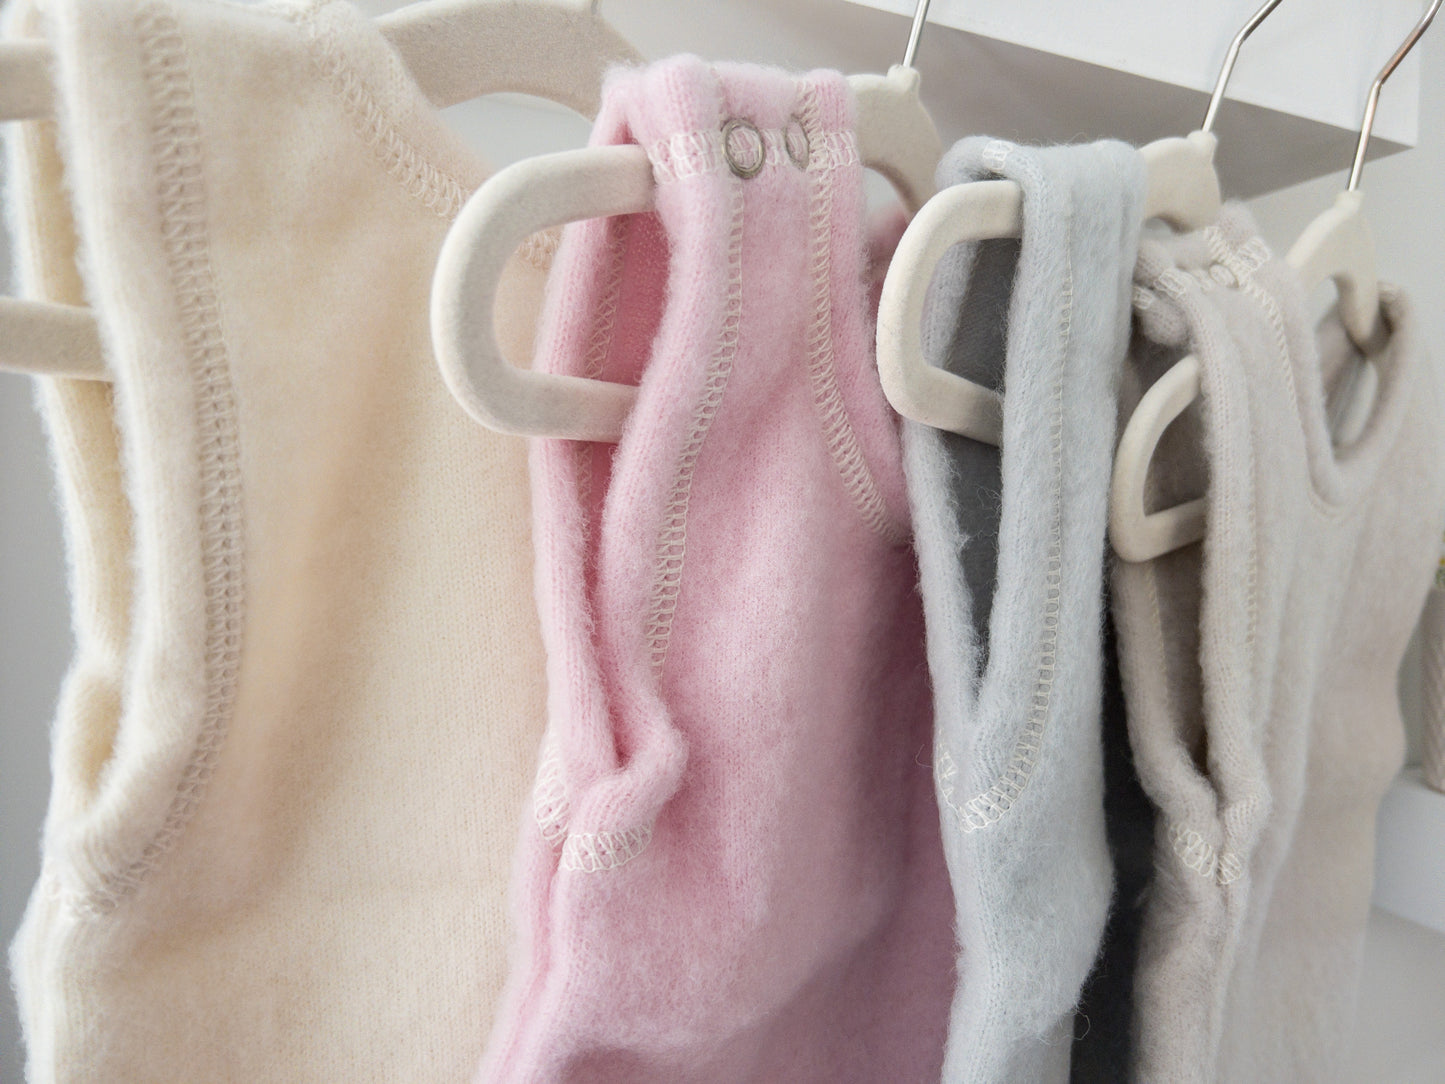 LANACare Baby/Toddler Vest in Organic Merino Wool - up to 6 mo.